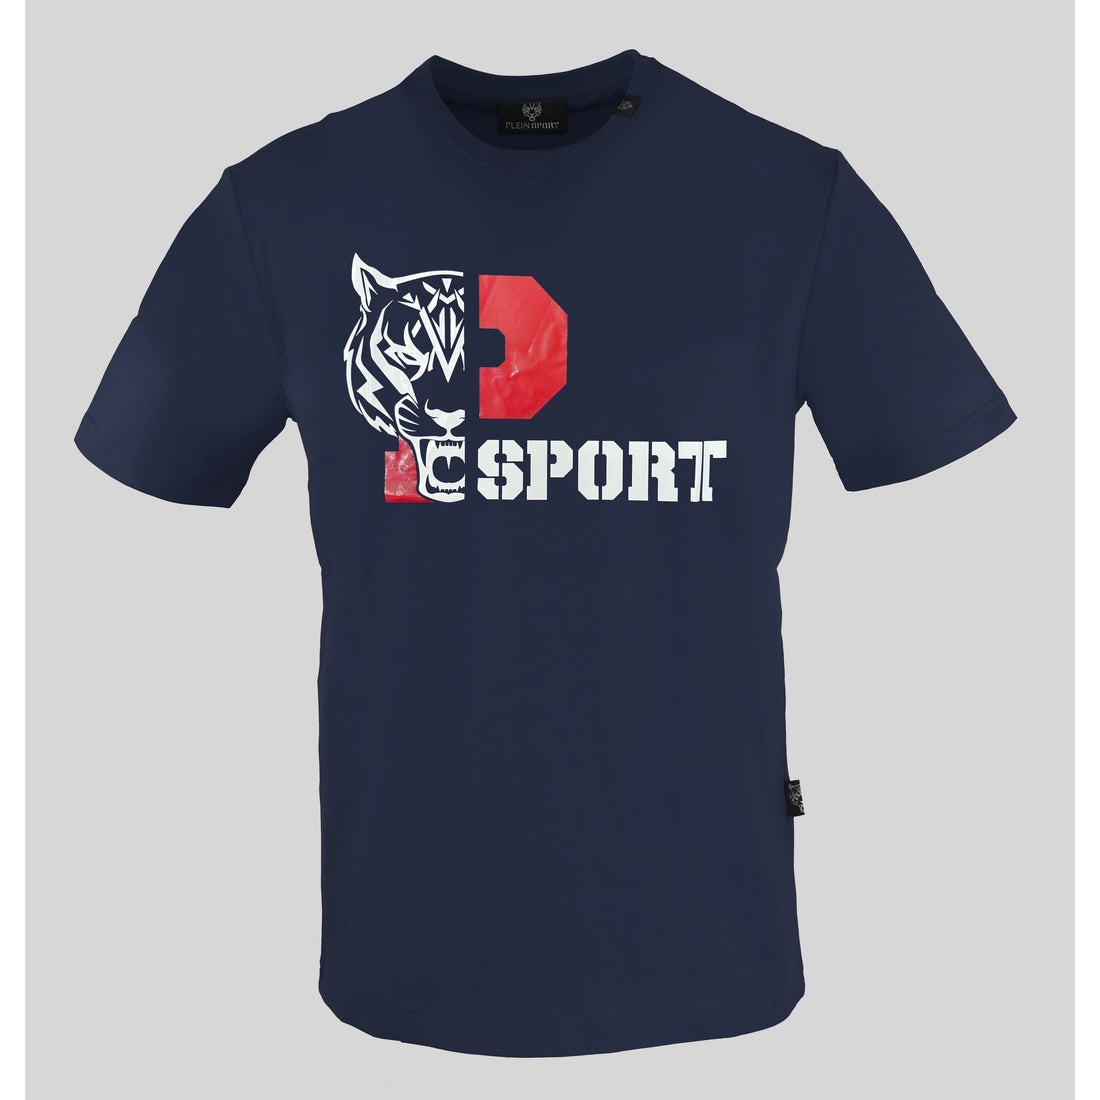 Plein Sport T-Shirts